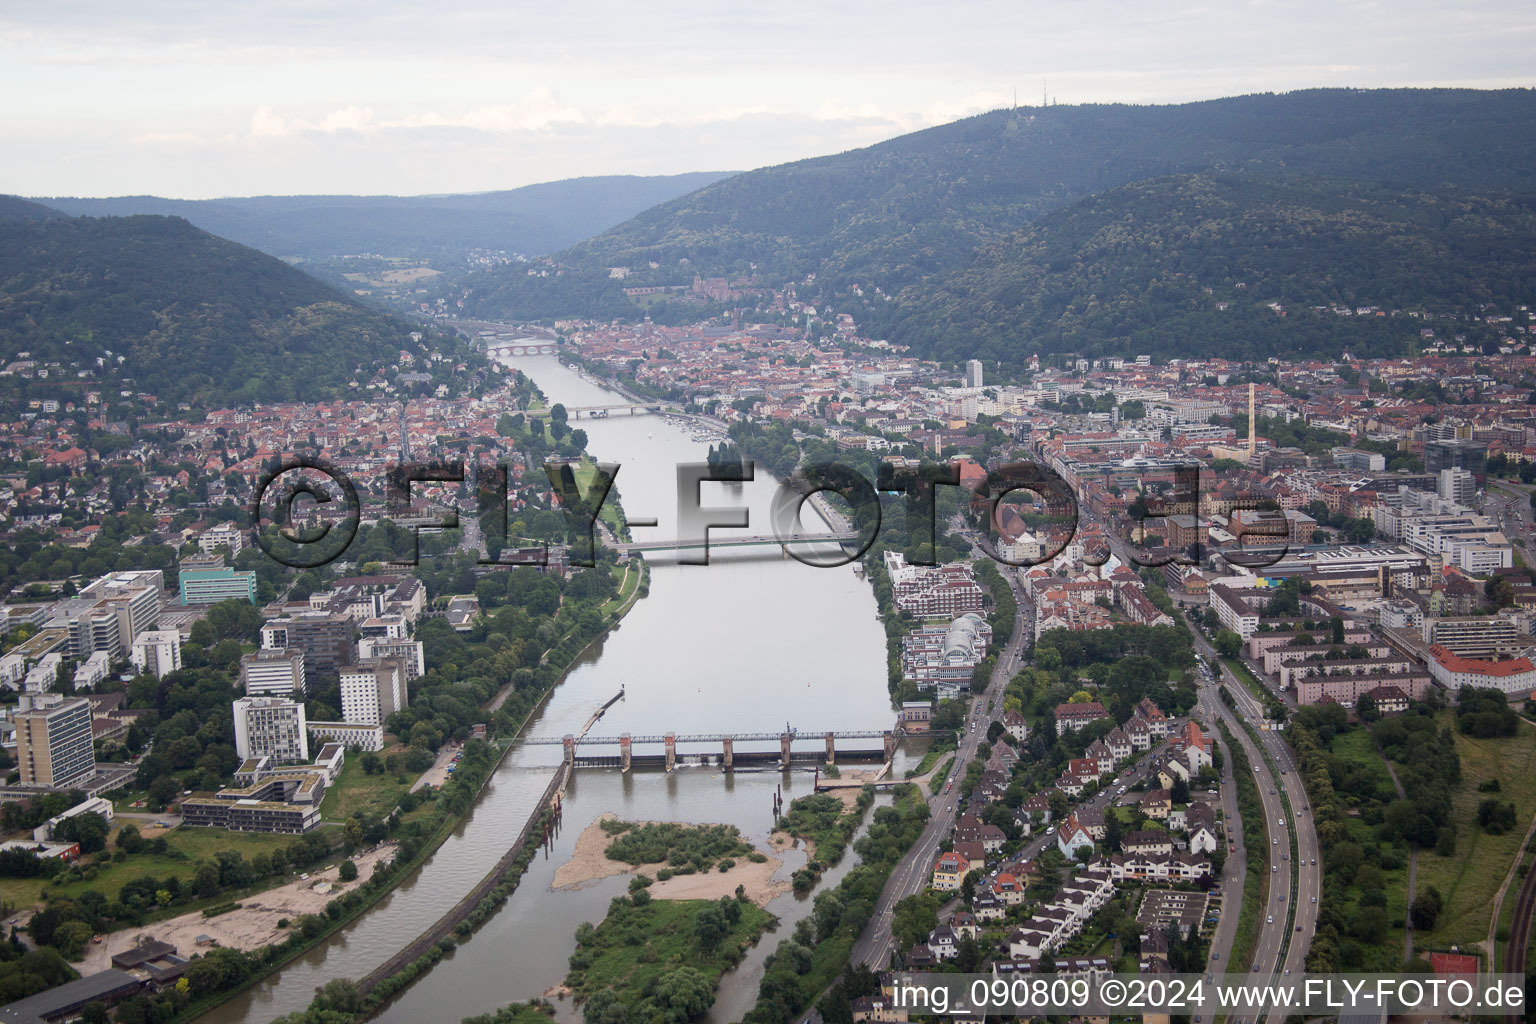 Neckar and Neuenheim in the district Neuenheim in Heidelberg in the state Baden-Wuerttemberg, Germany